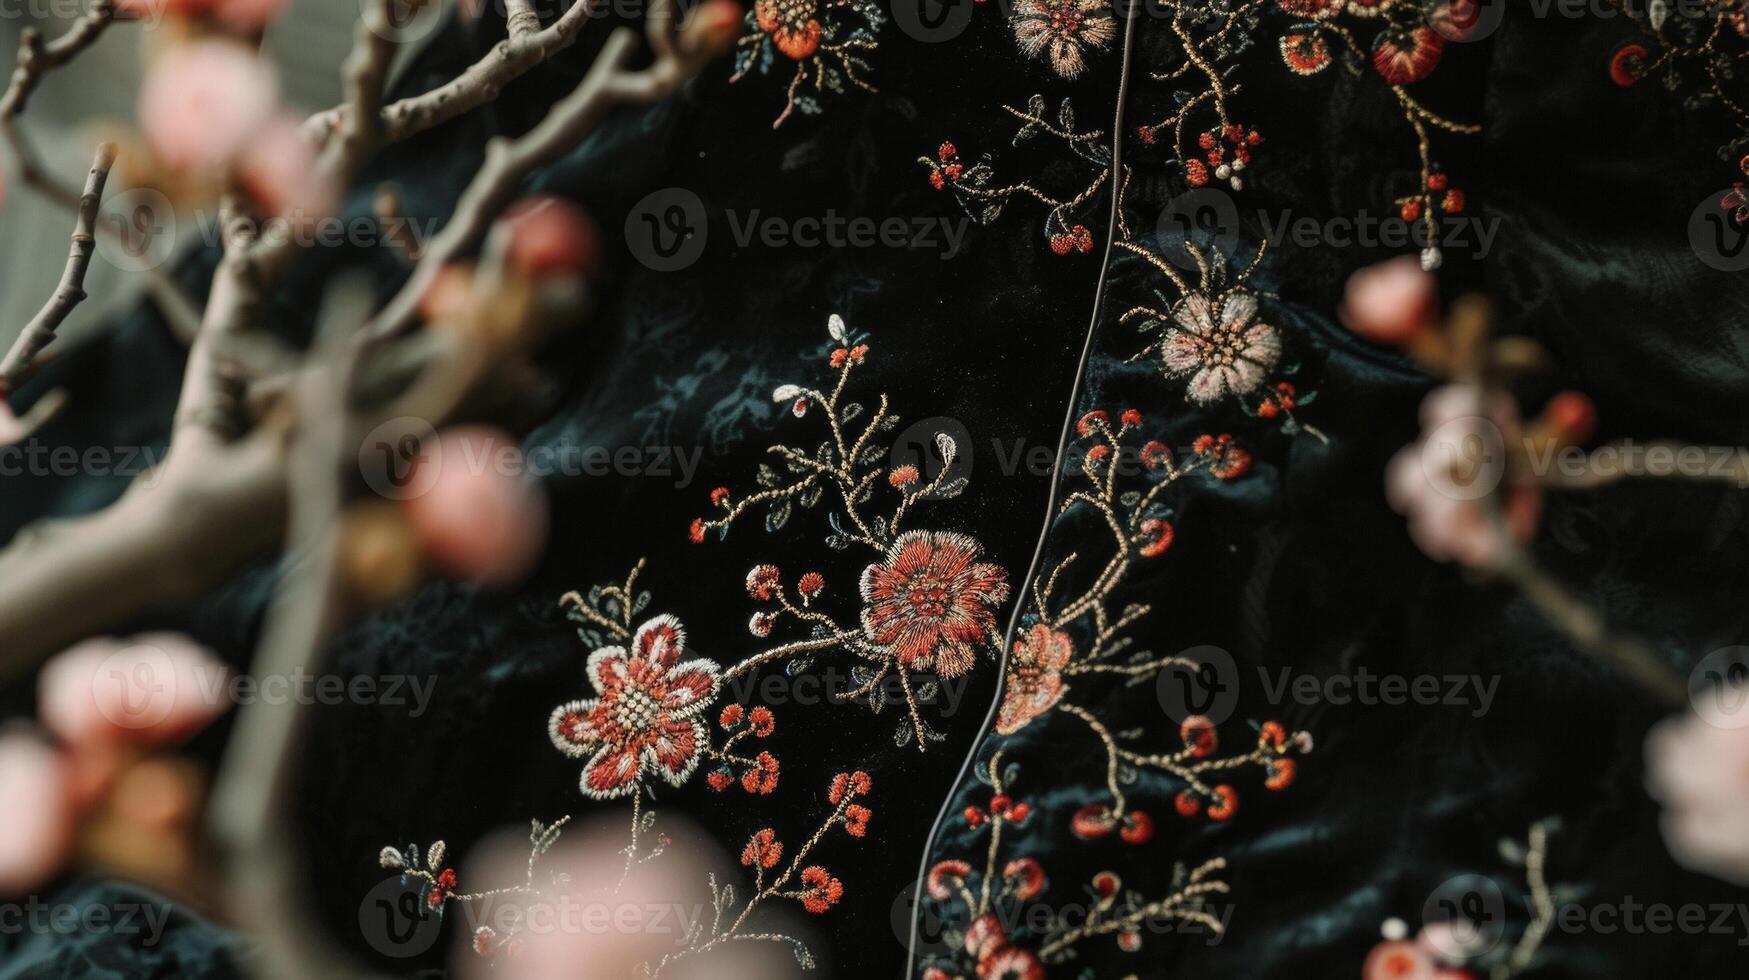 un cuello alto terciopelo vestir presentando Rico floral adornos inspirado por tradicional chino bordado. Perfecto para un romántico noche debajo el estrellas foto